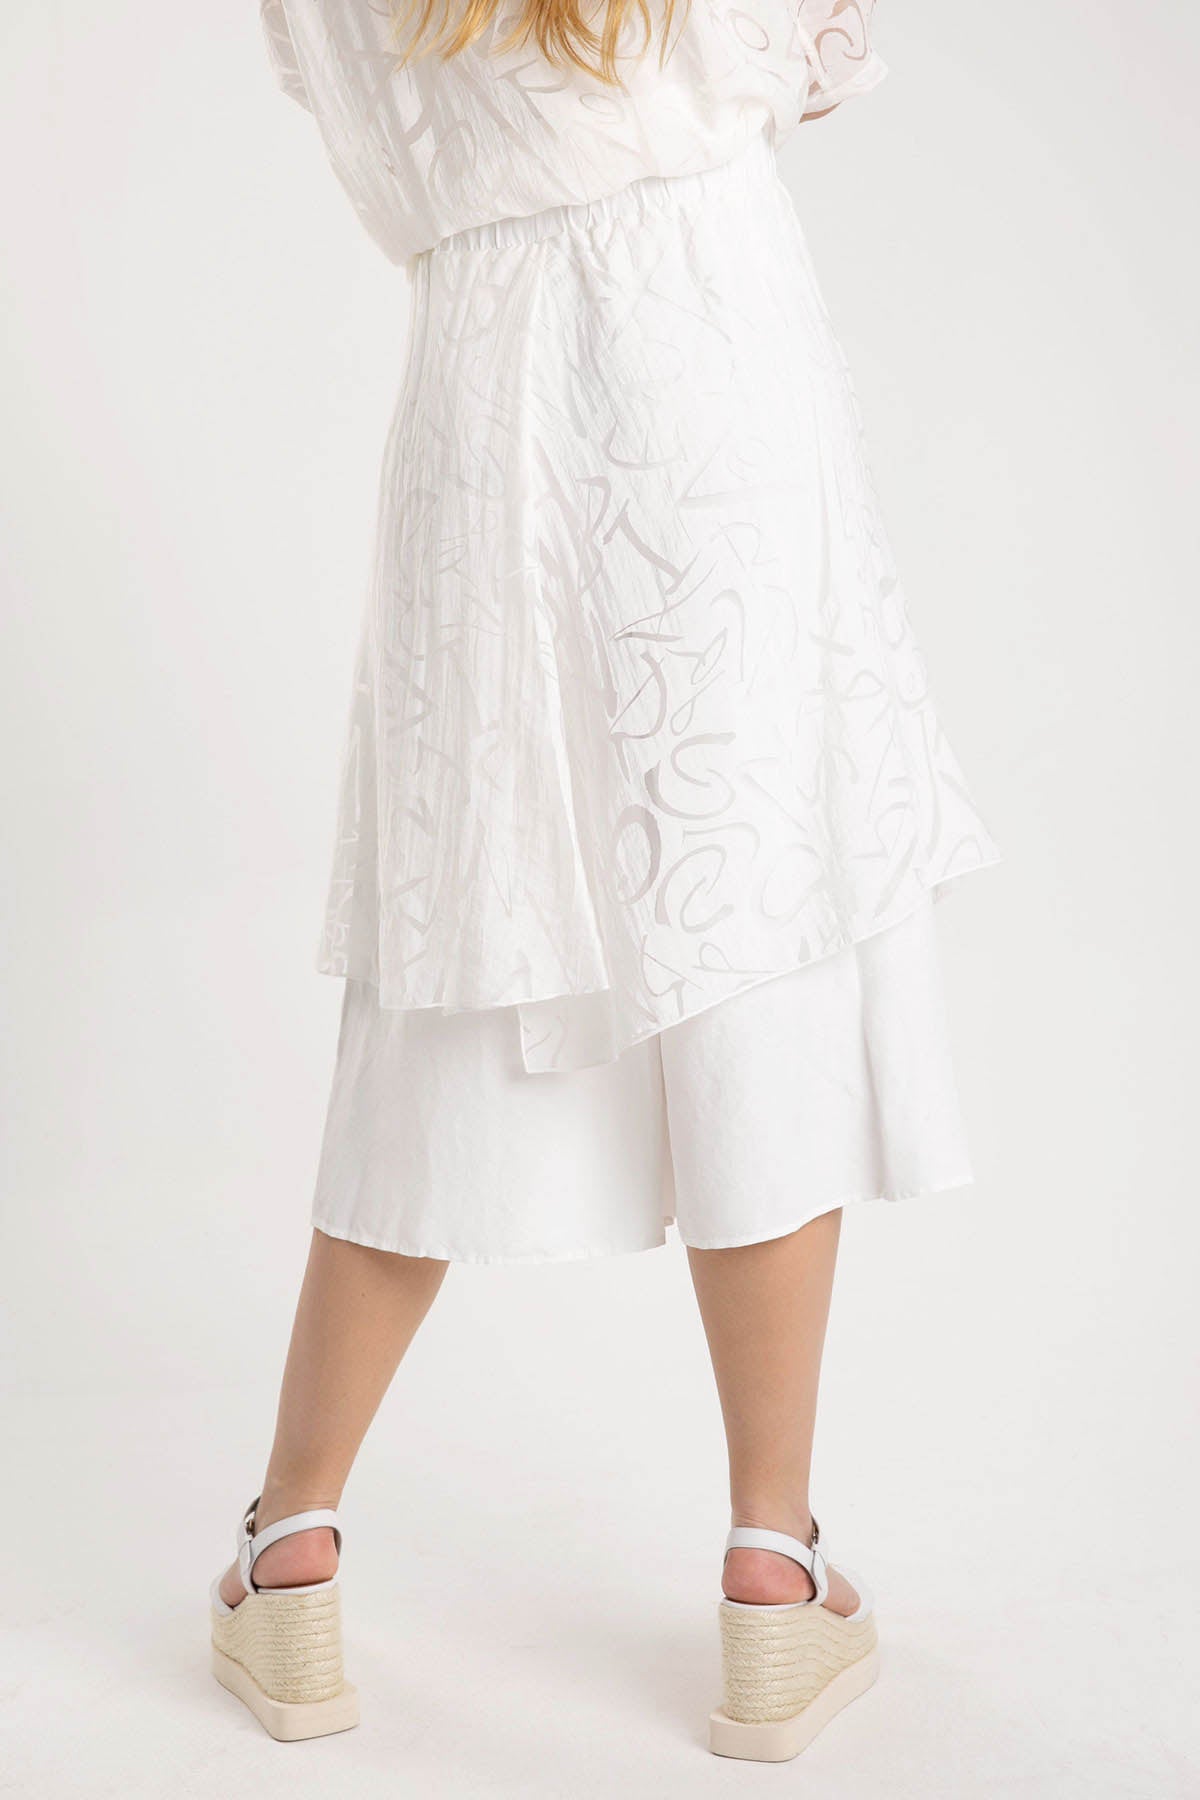 Crea Concept Yakma Desenli Beli Lastikli Pantolon-Libas Trendy Fashion Store